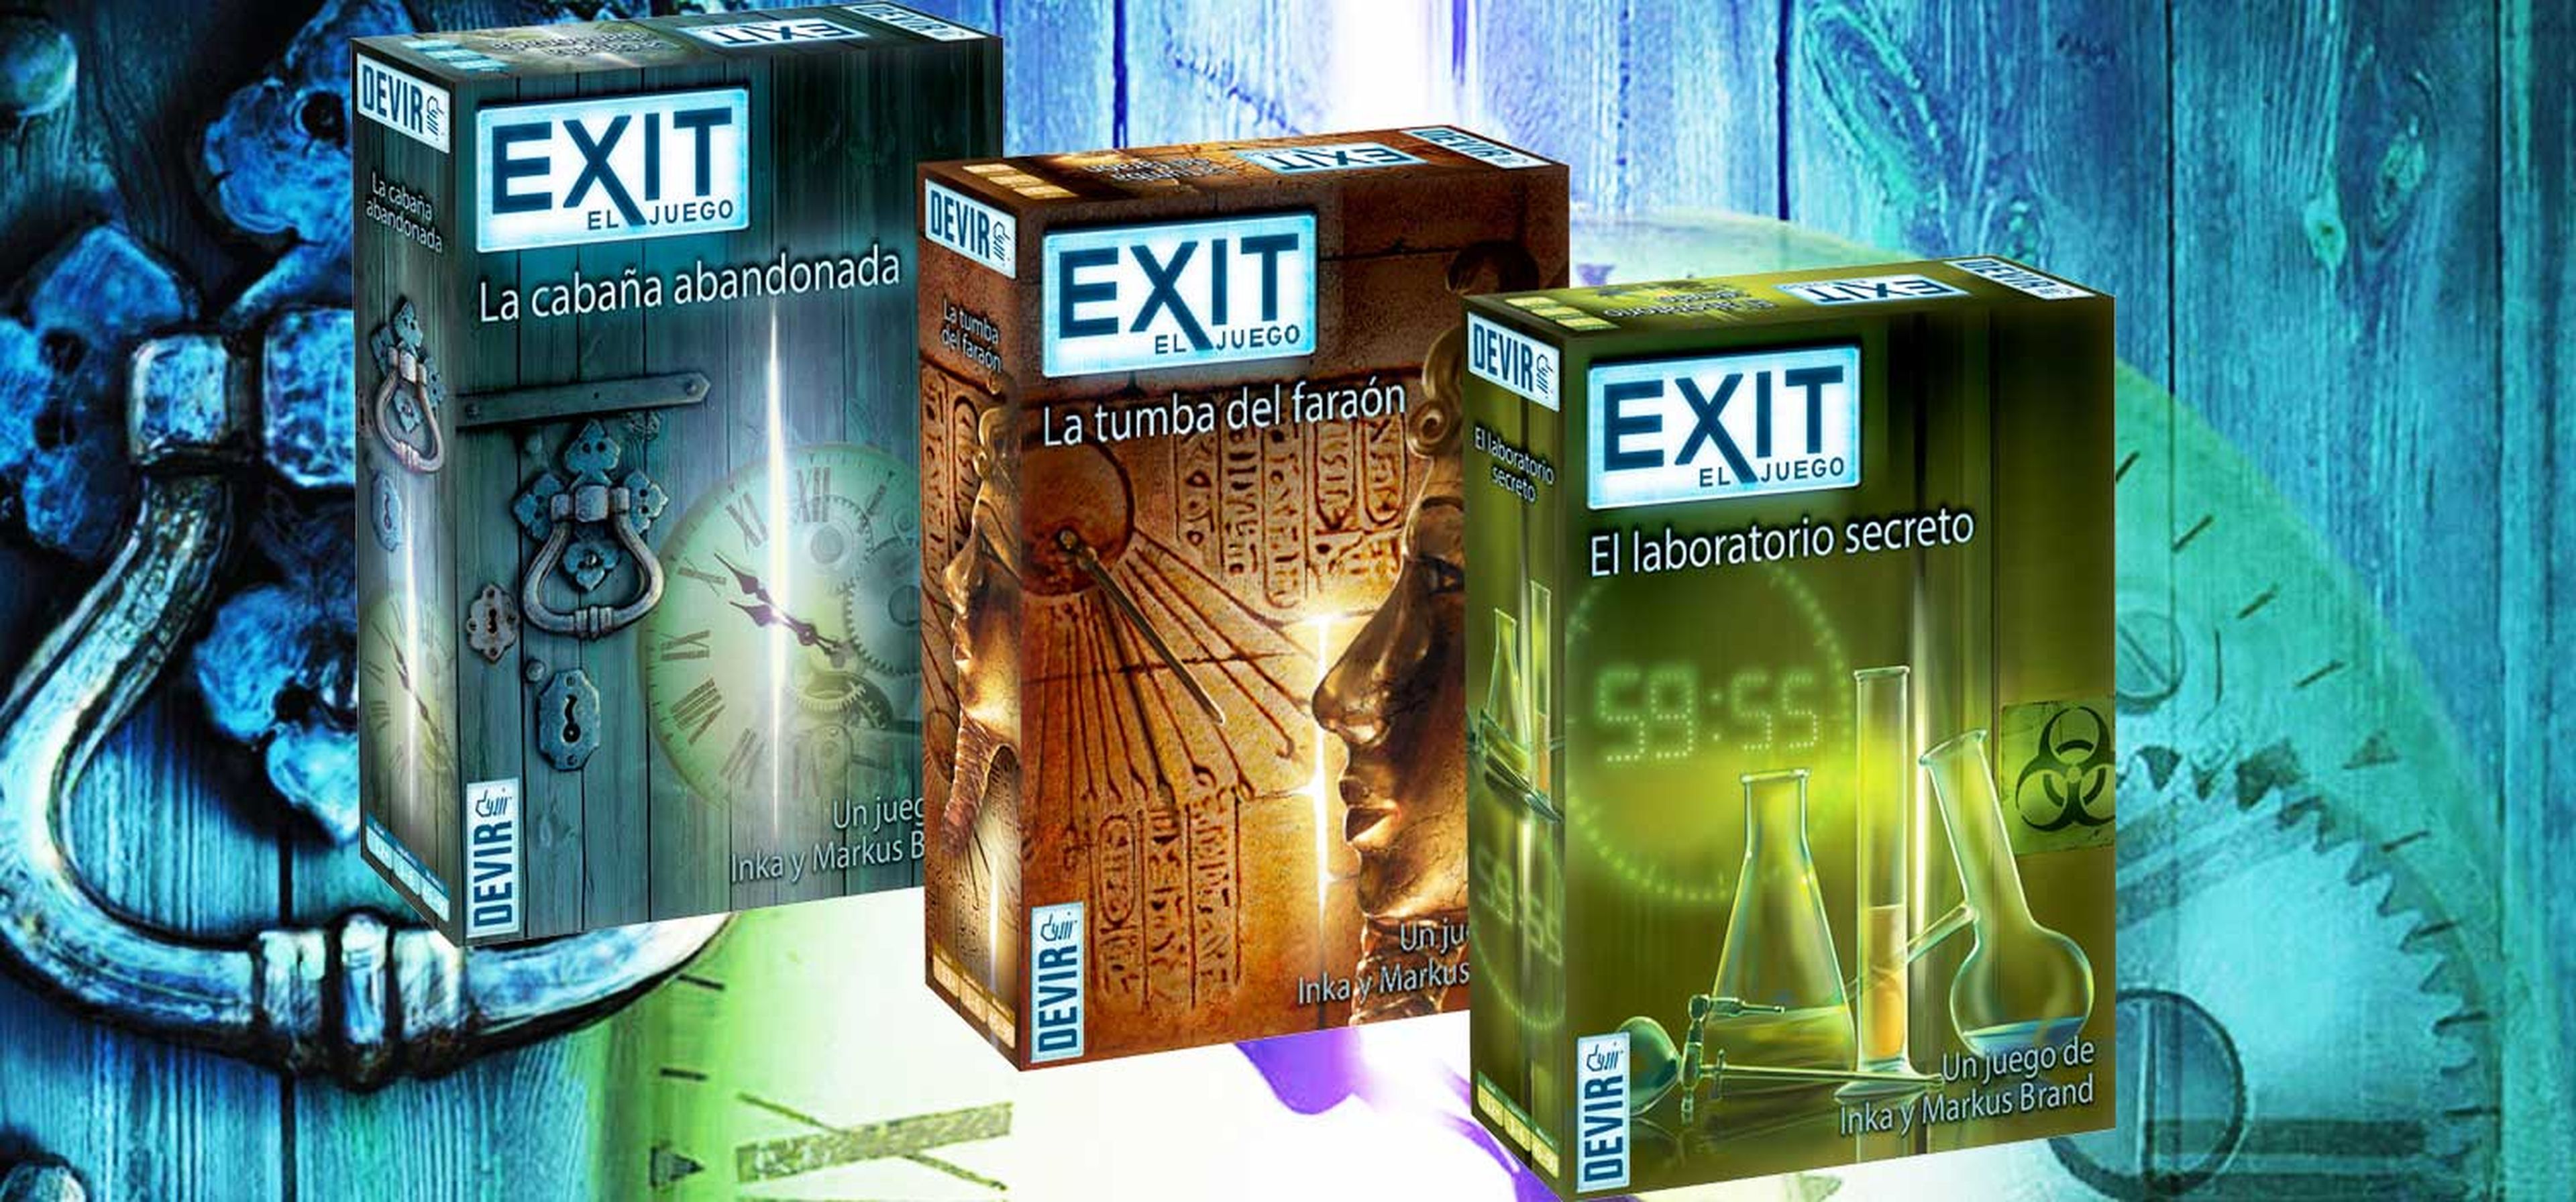 Exit - El juego de mesa de las ‘Room escape’ de Devir